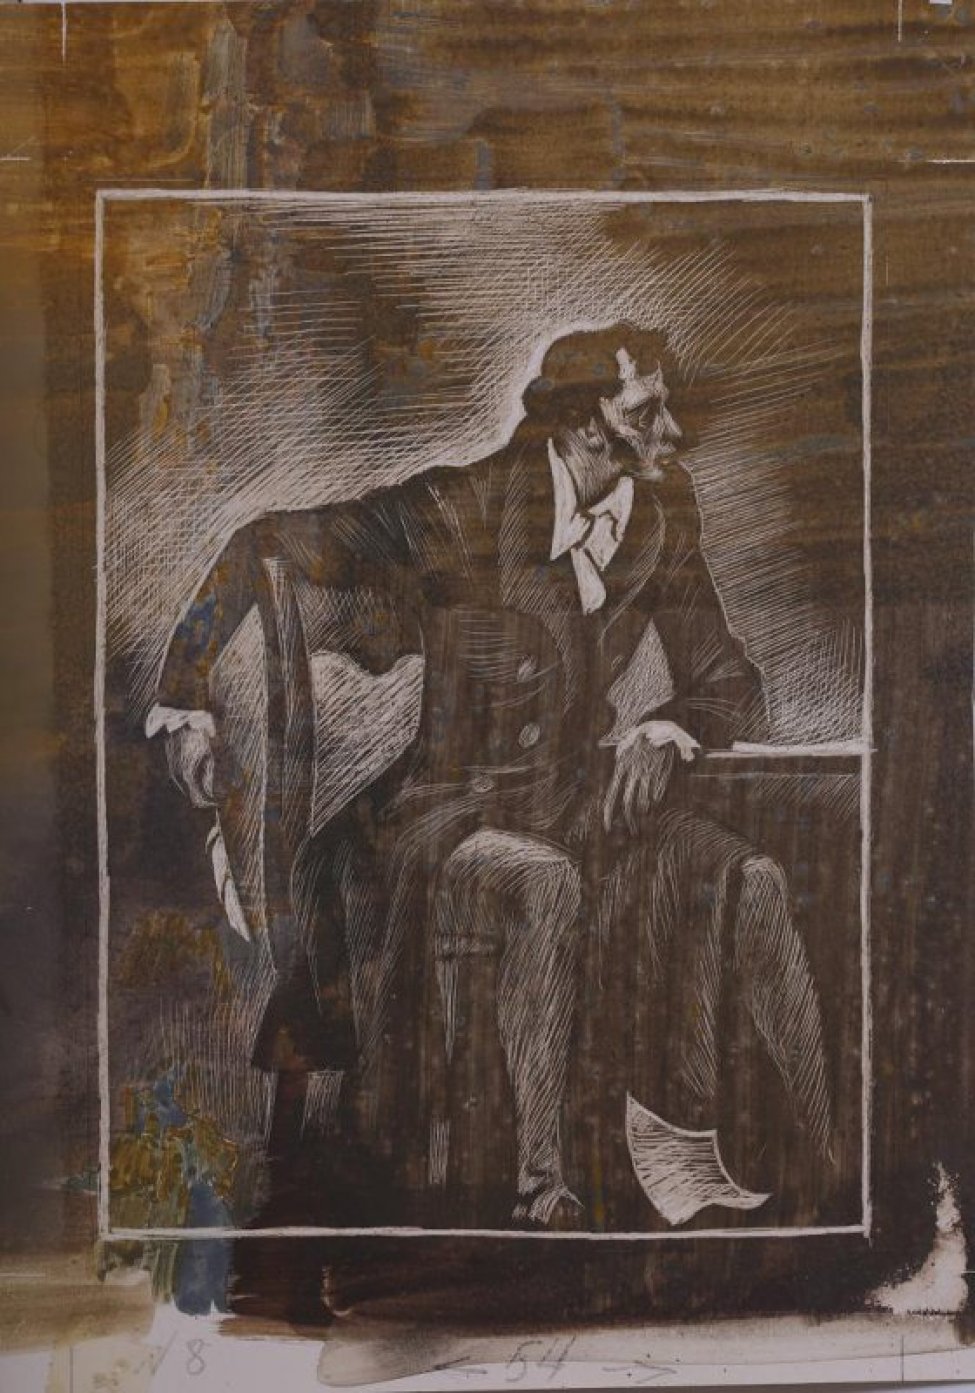 Изображен в 3/4  повороте, сидящий за столом, мужчина с пером в руке.